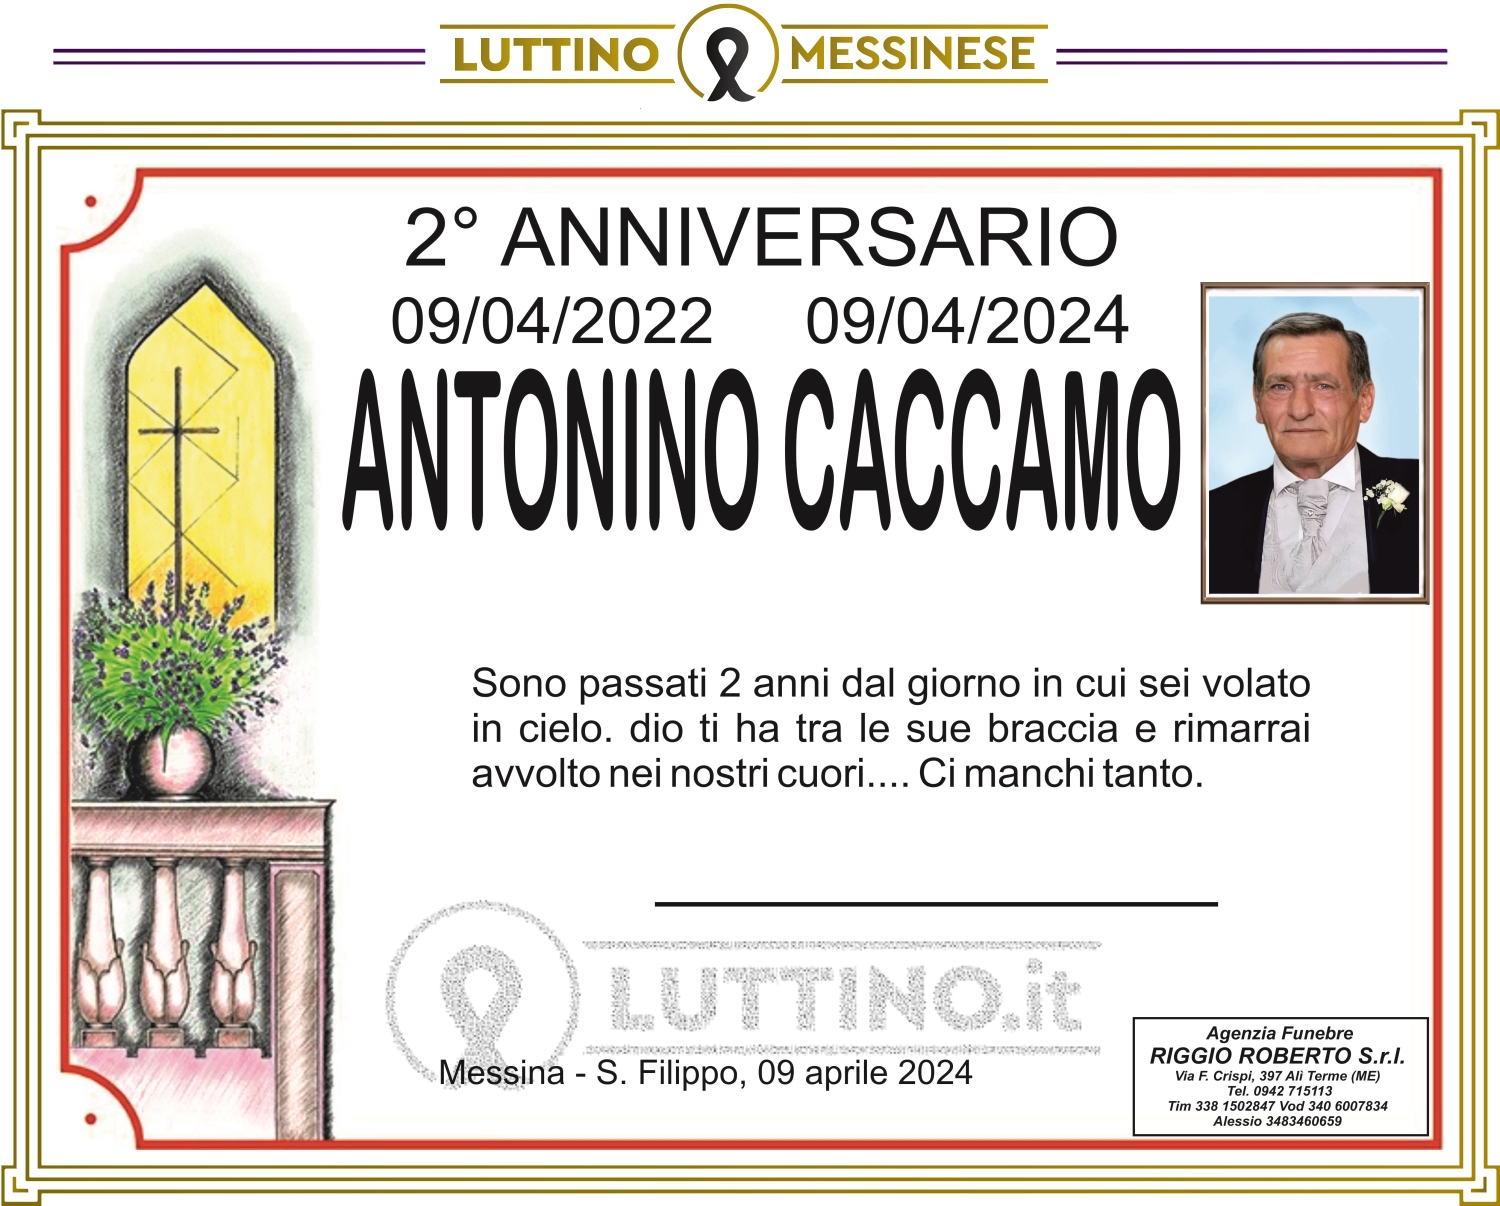 Antonino Caccamo